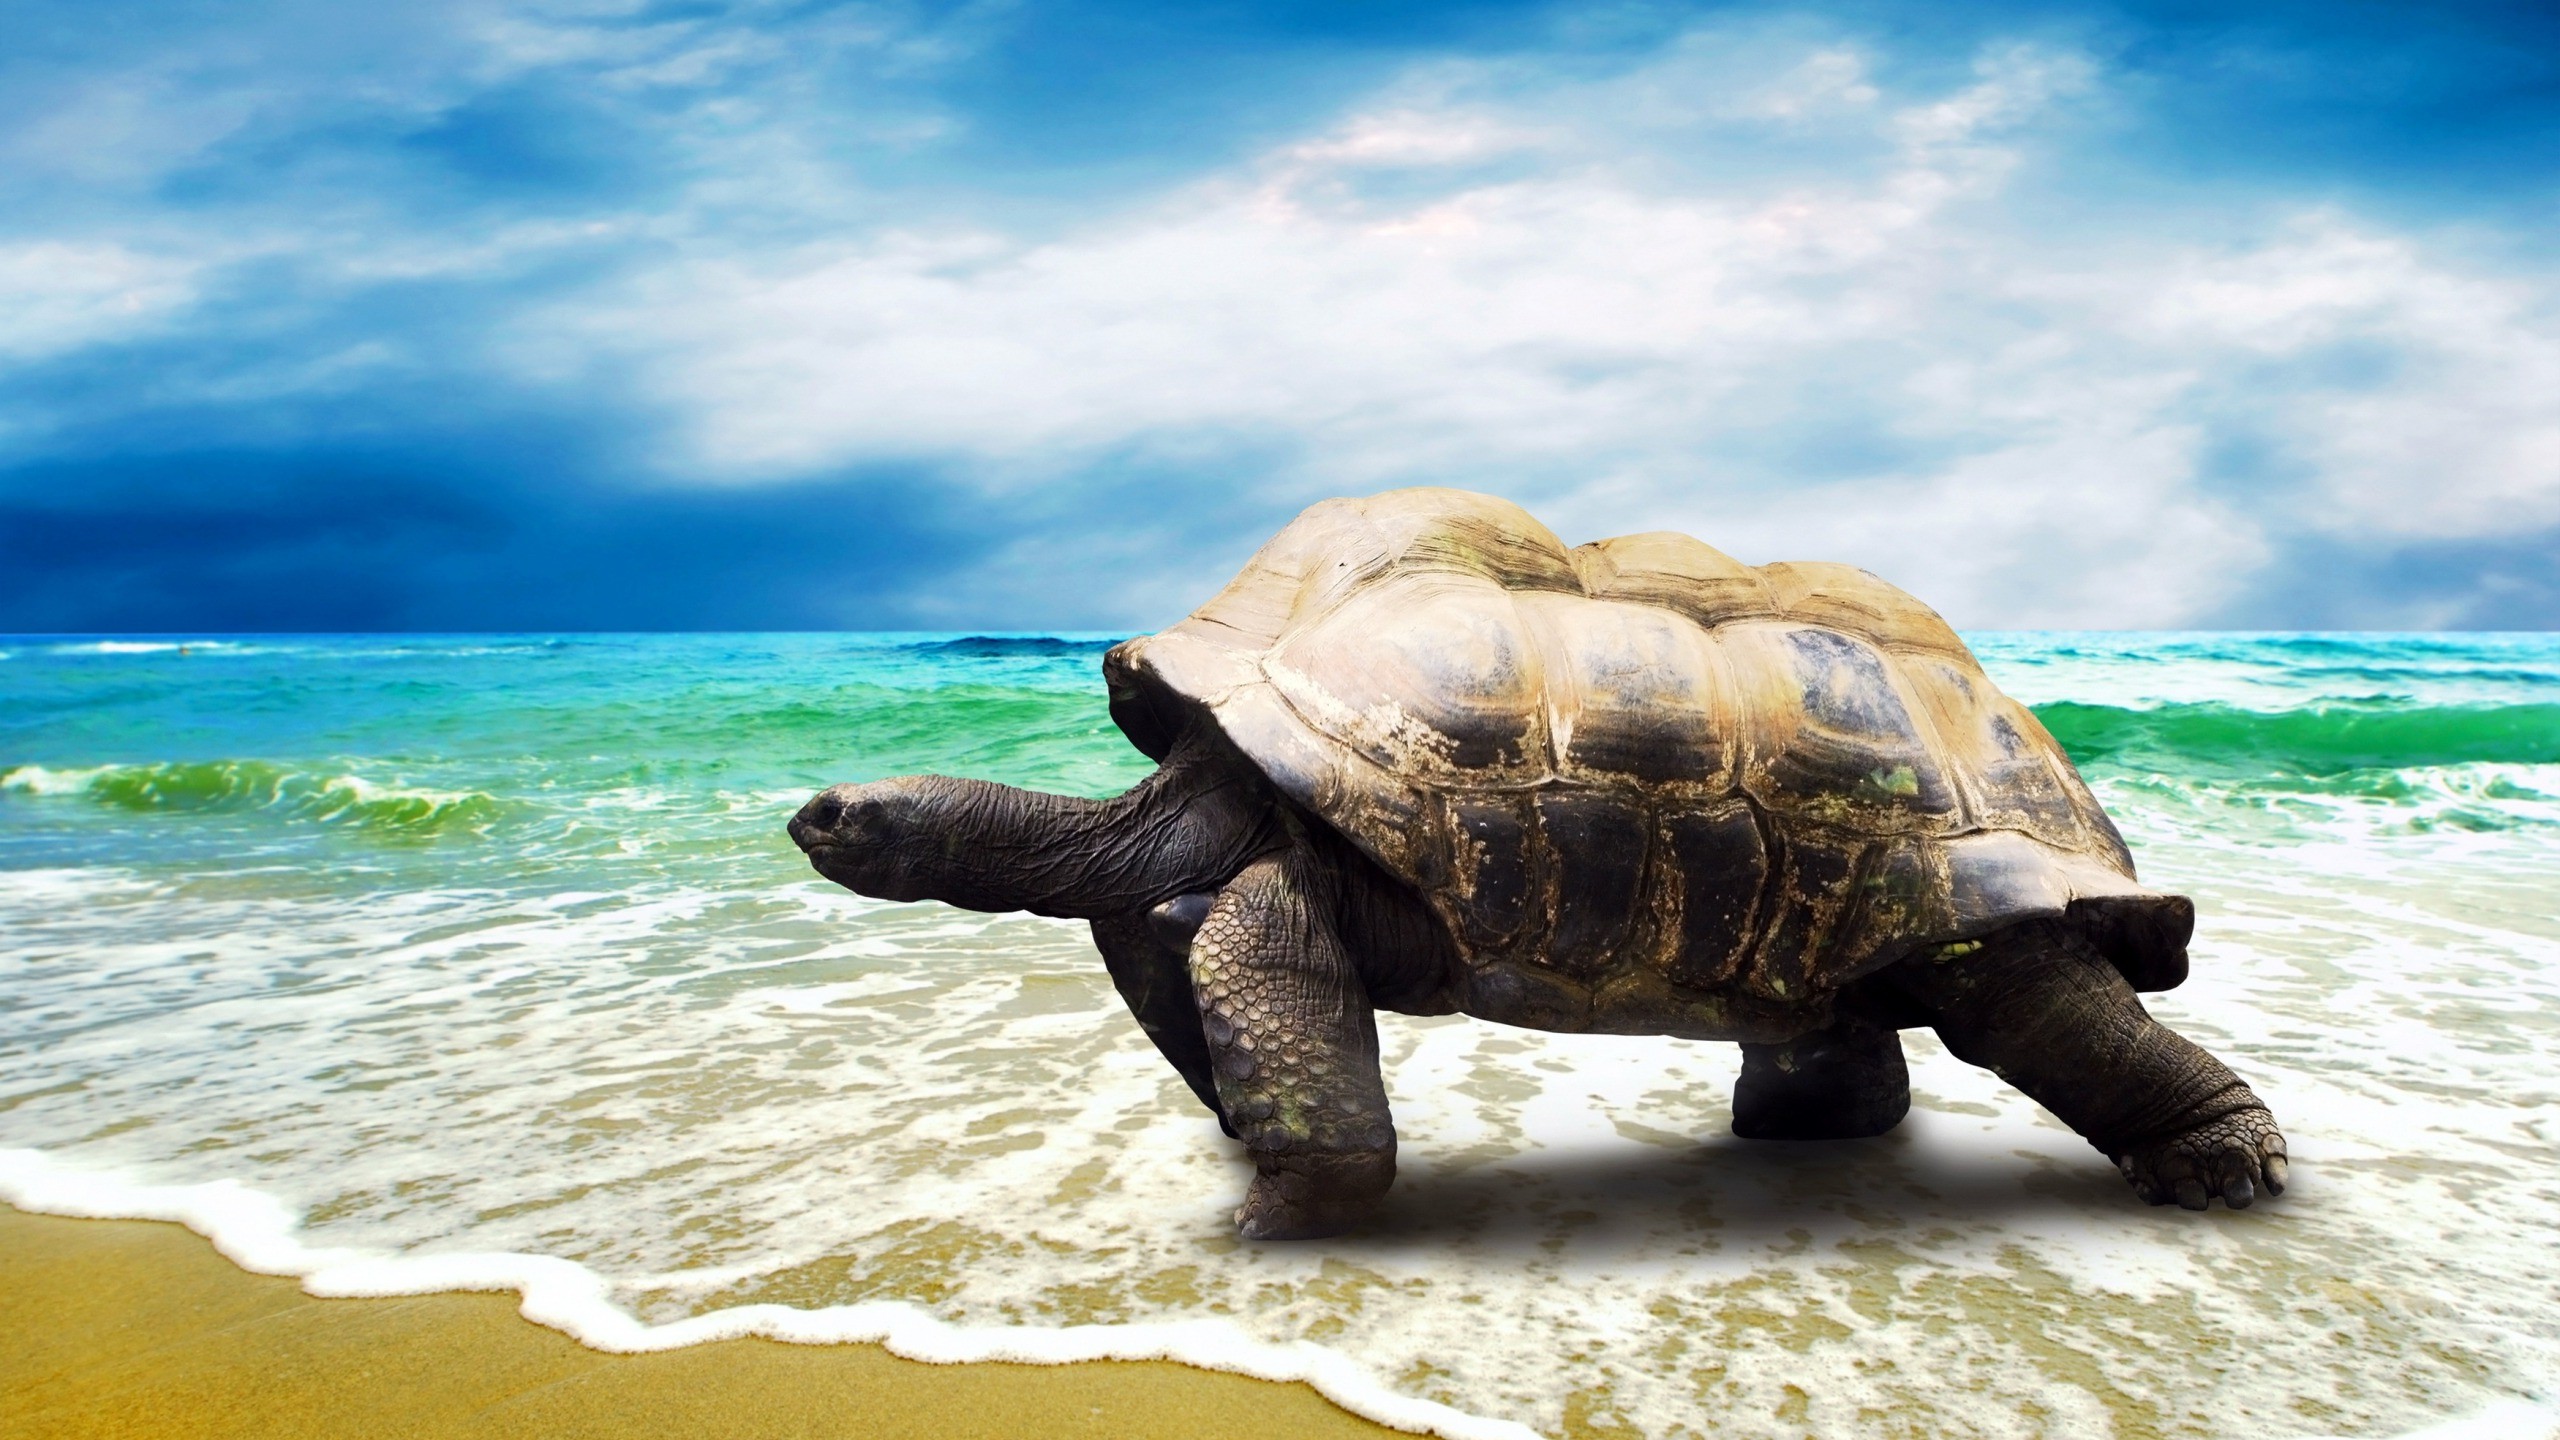 turtle walking on beach wallpaper